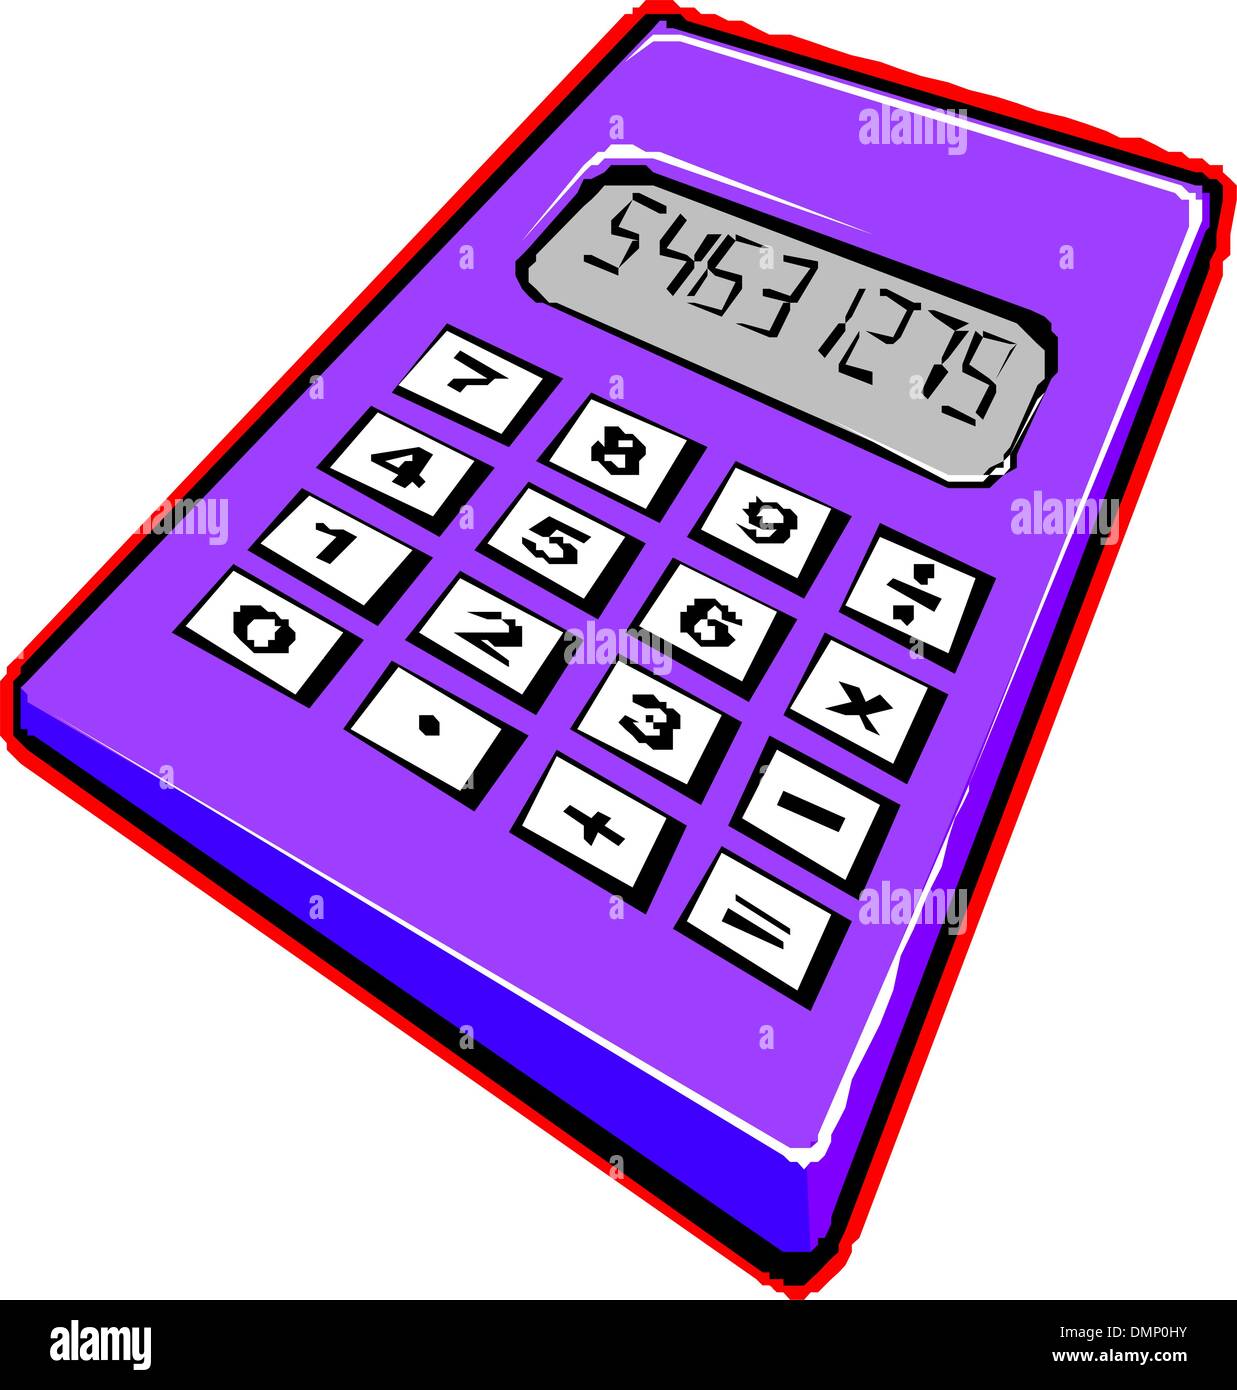 Electronic calculator Stock Vector